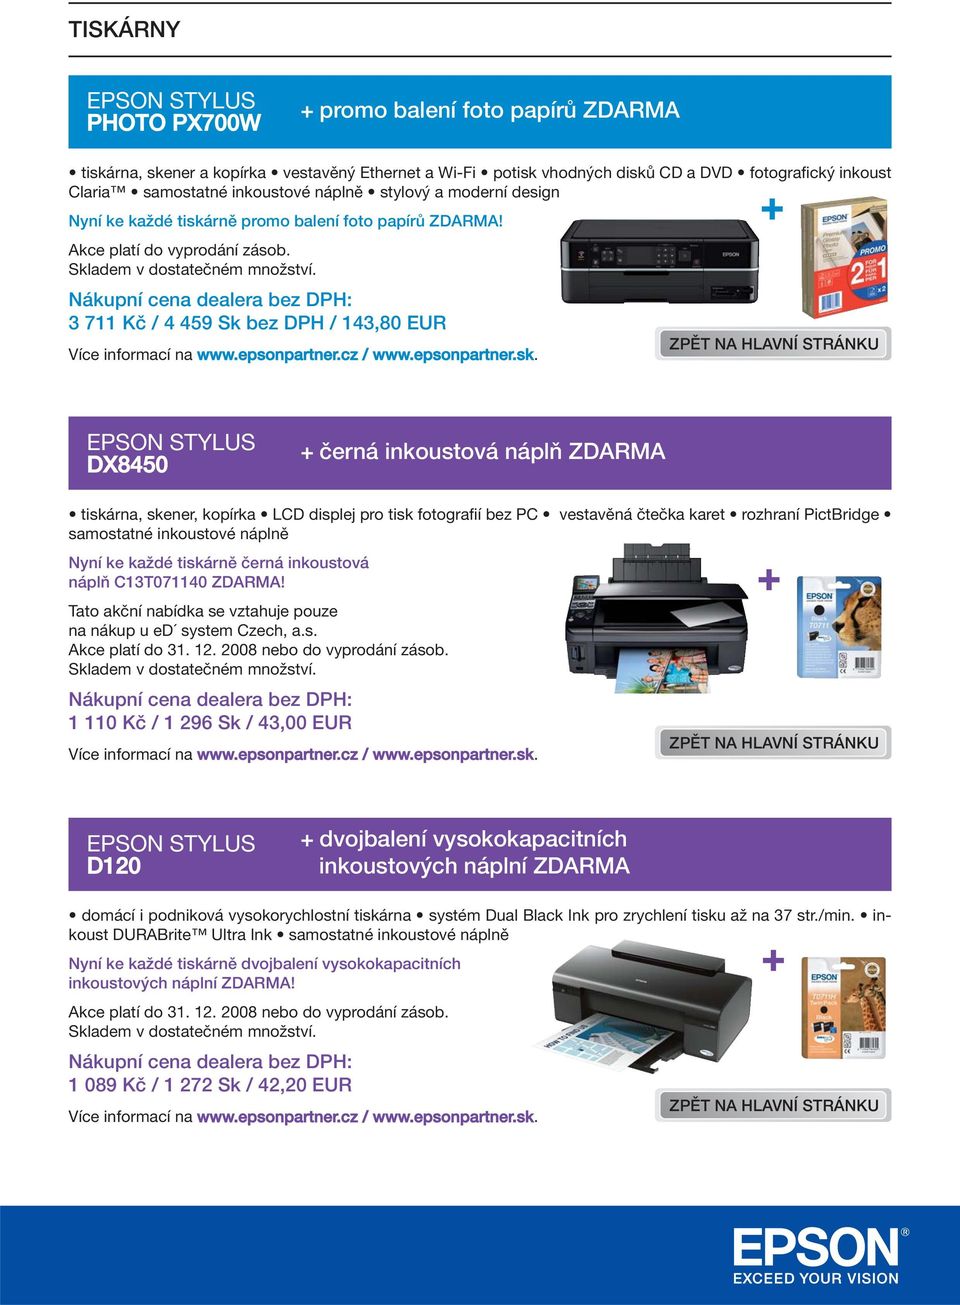 3 711 Kč / 4 459 Sk bez DPH / 143,80 EUR DX8450 černá inkoustová náplň ZDARMA tiskárna, skener, kopírka LCD displej pro tisk fotografií bez PC vestavěná čtečka karet rozhraní PictBridge samostatné